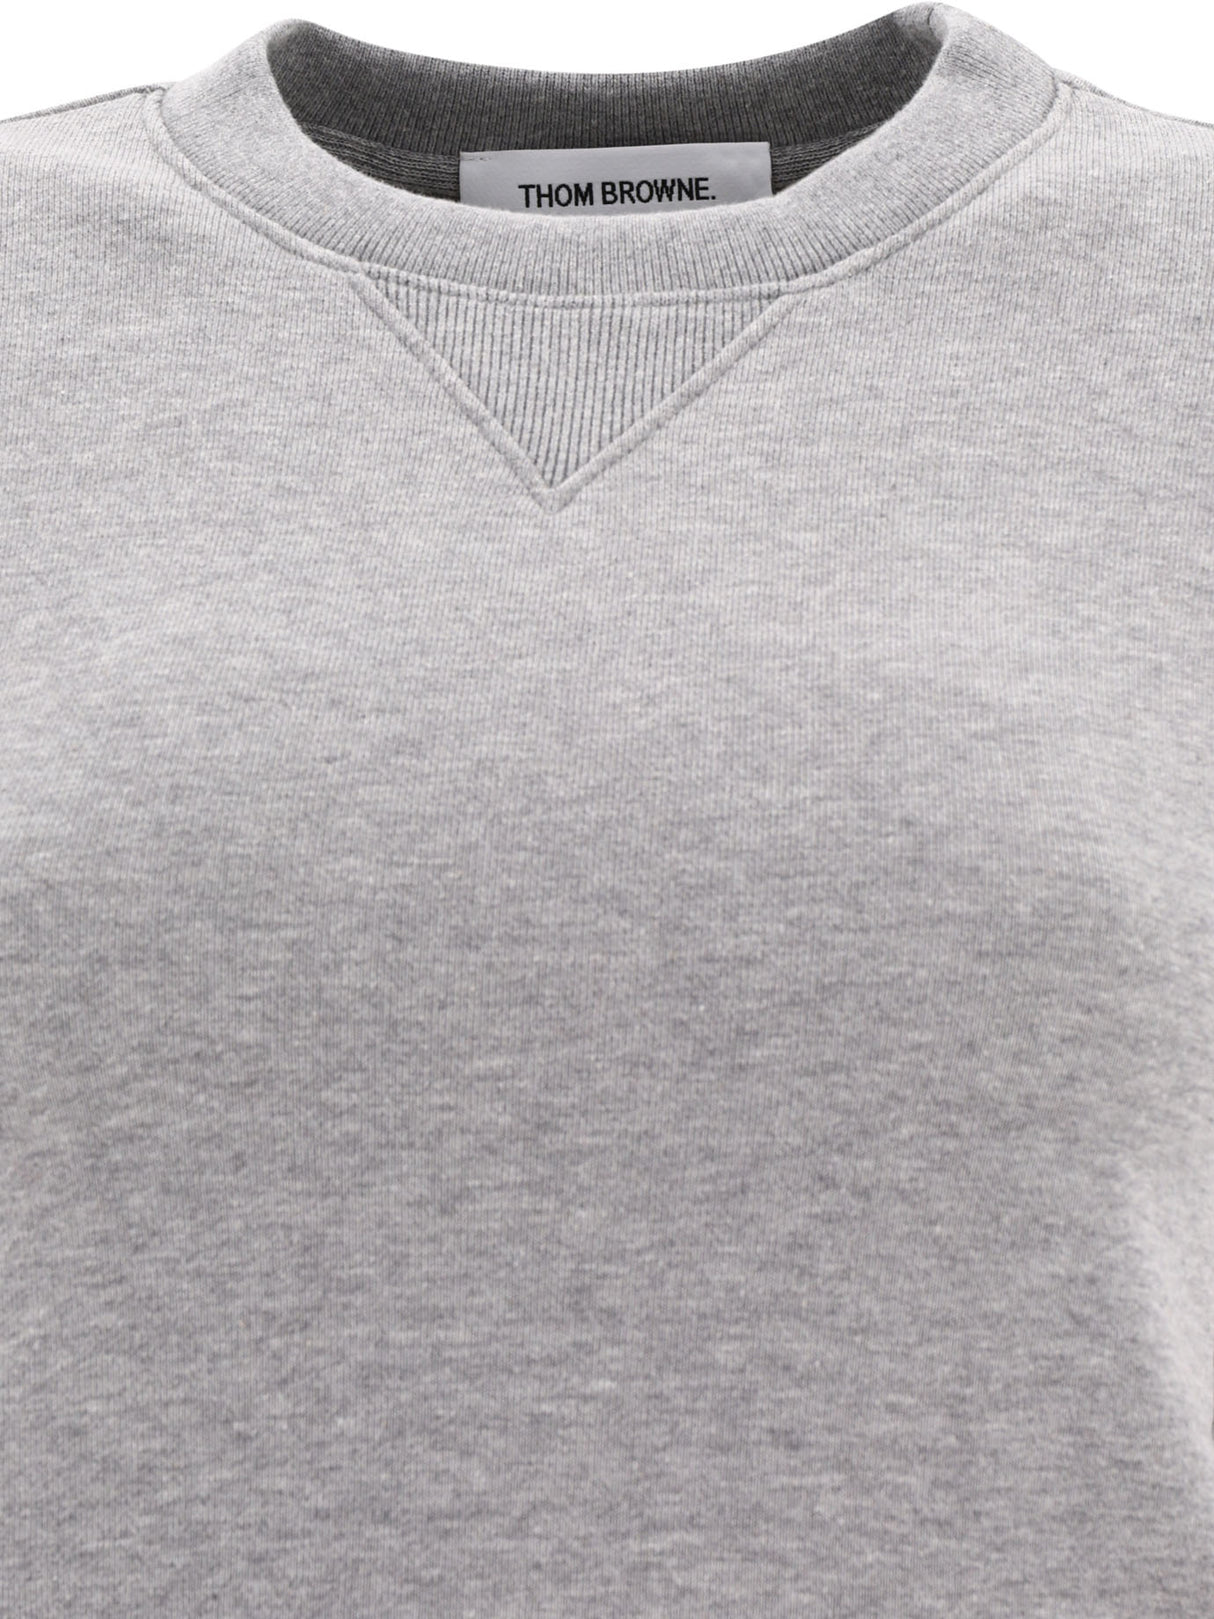 THOM BROWNE Grey 4-Bar Sweatshirt for Women